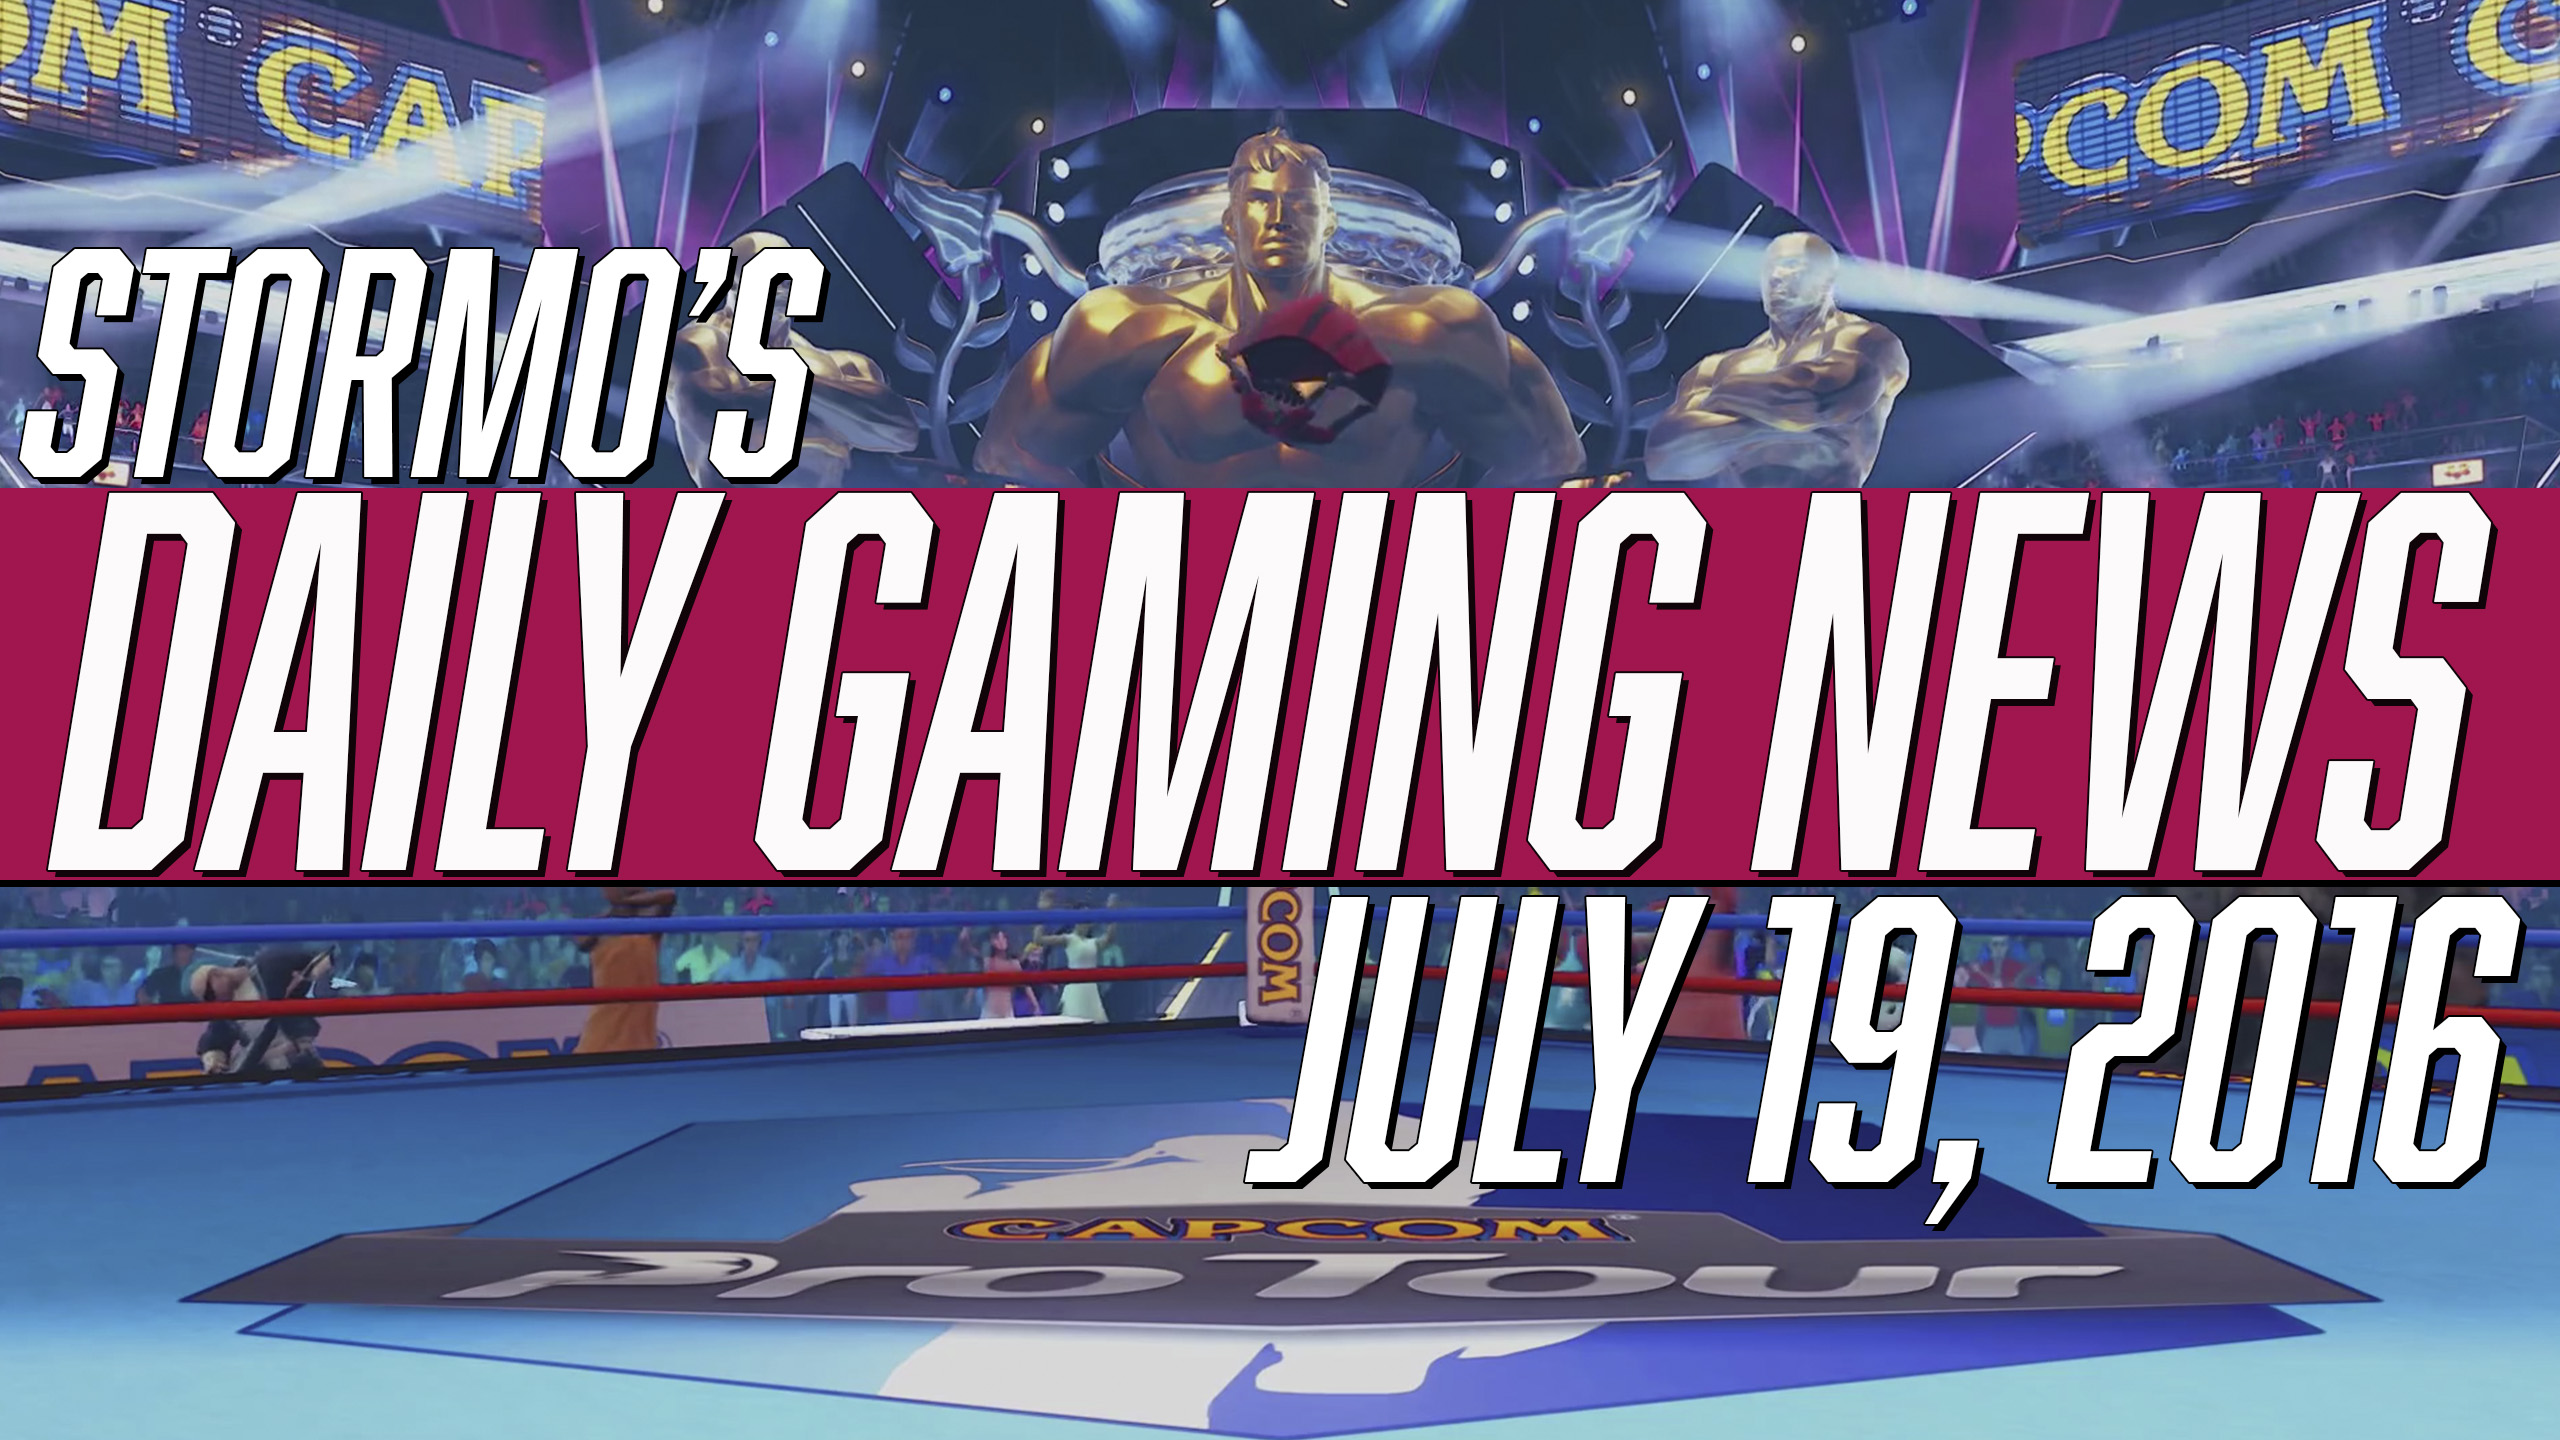 Daily Gaming News - July 19, 2016